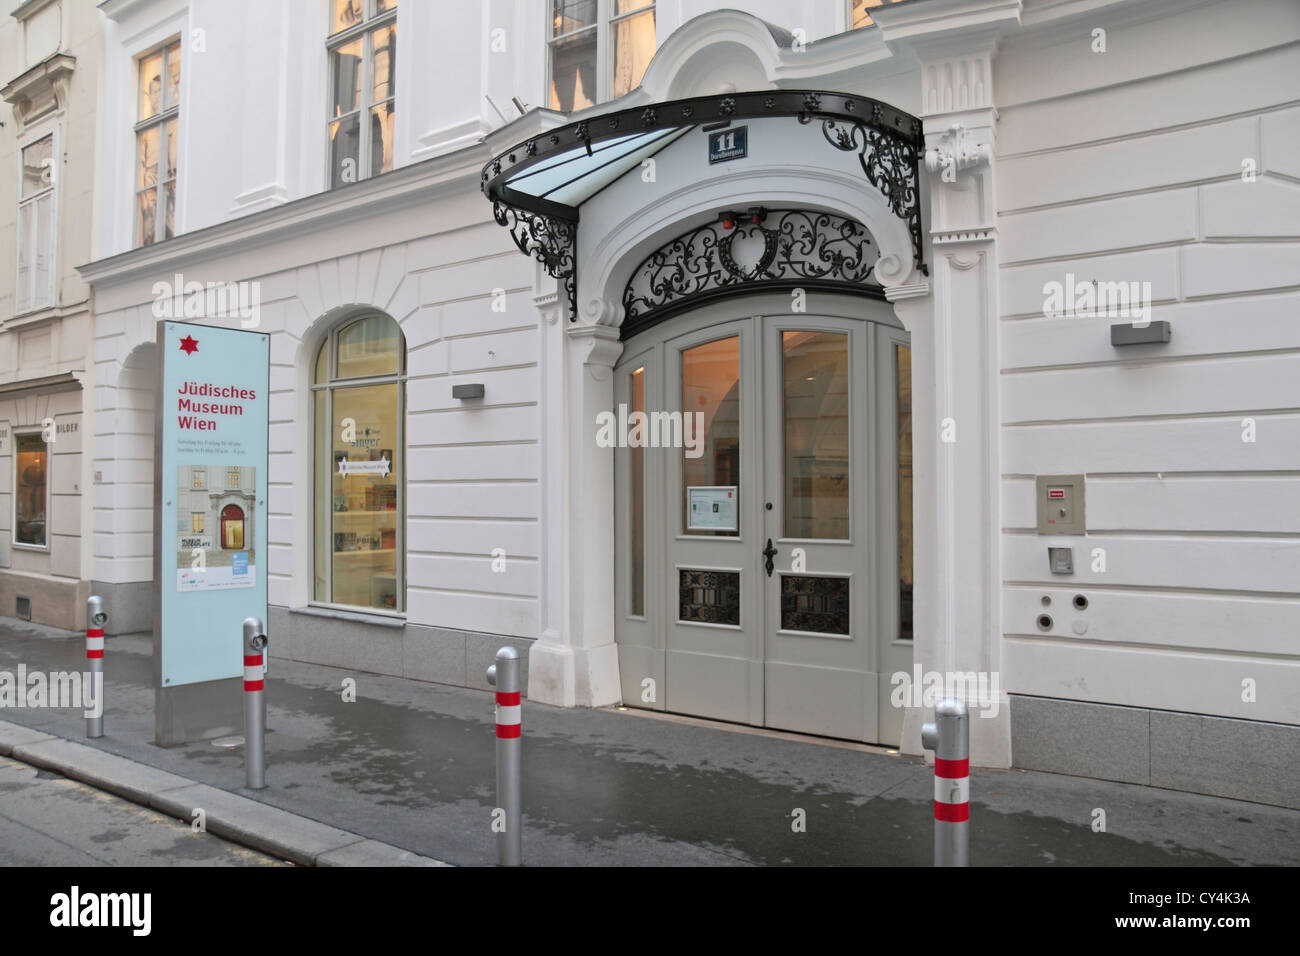 The Judisches Museum Wien in Vienna, Austria. Stock Photo